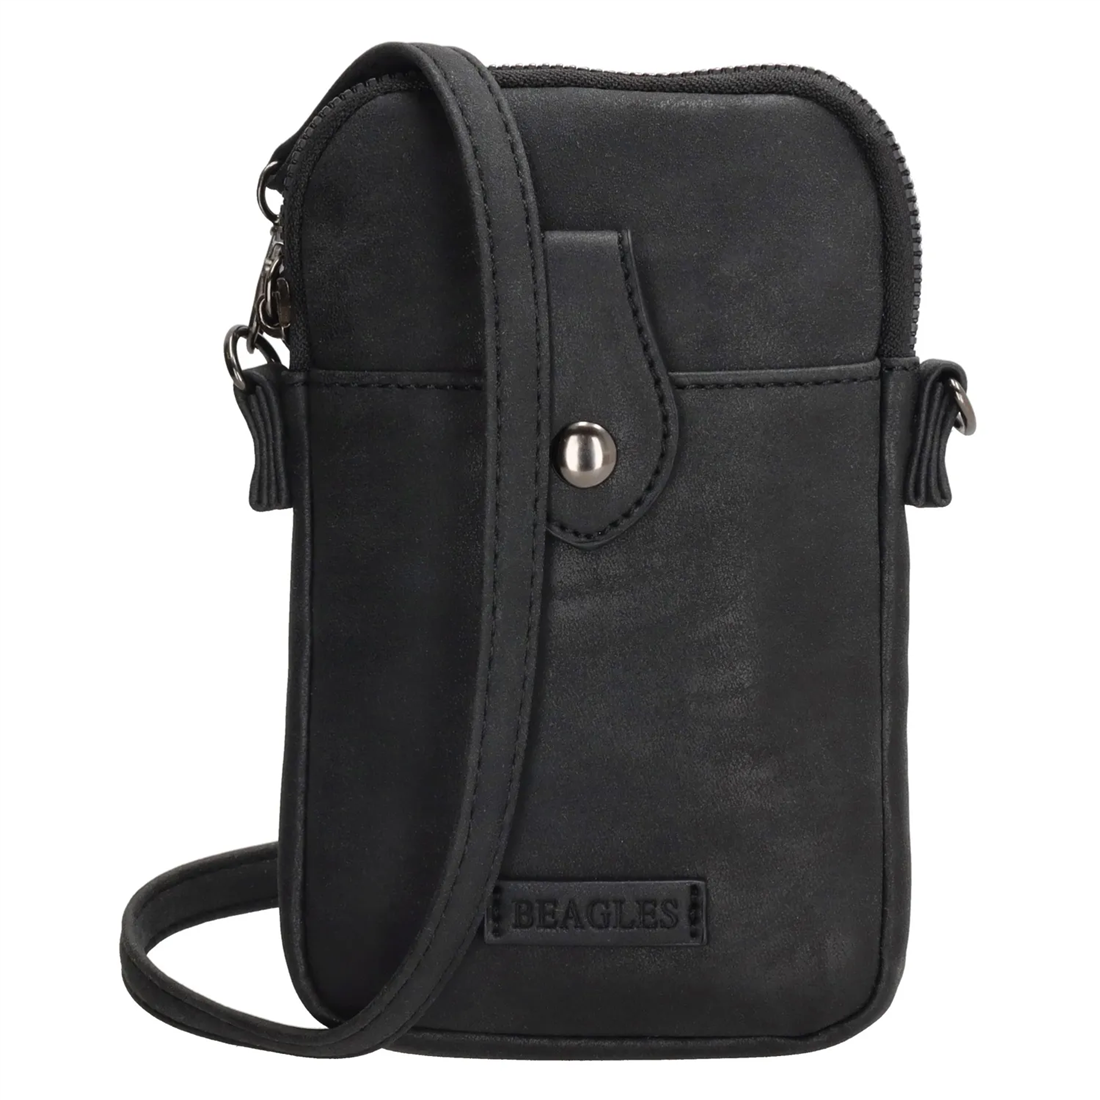 Deagles Phone bags+shoulder belt and space for cards color black